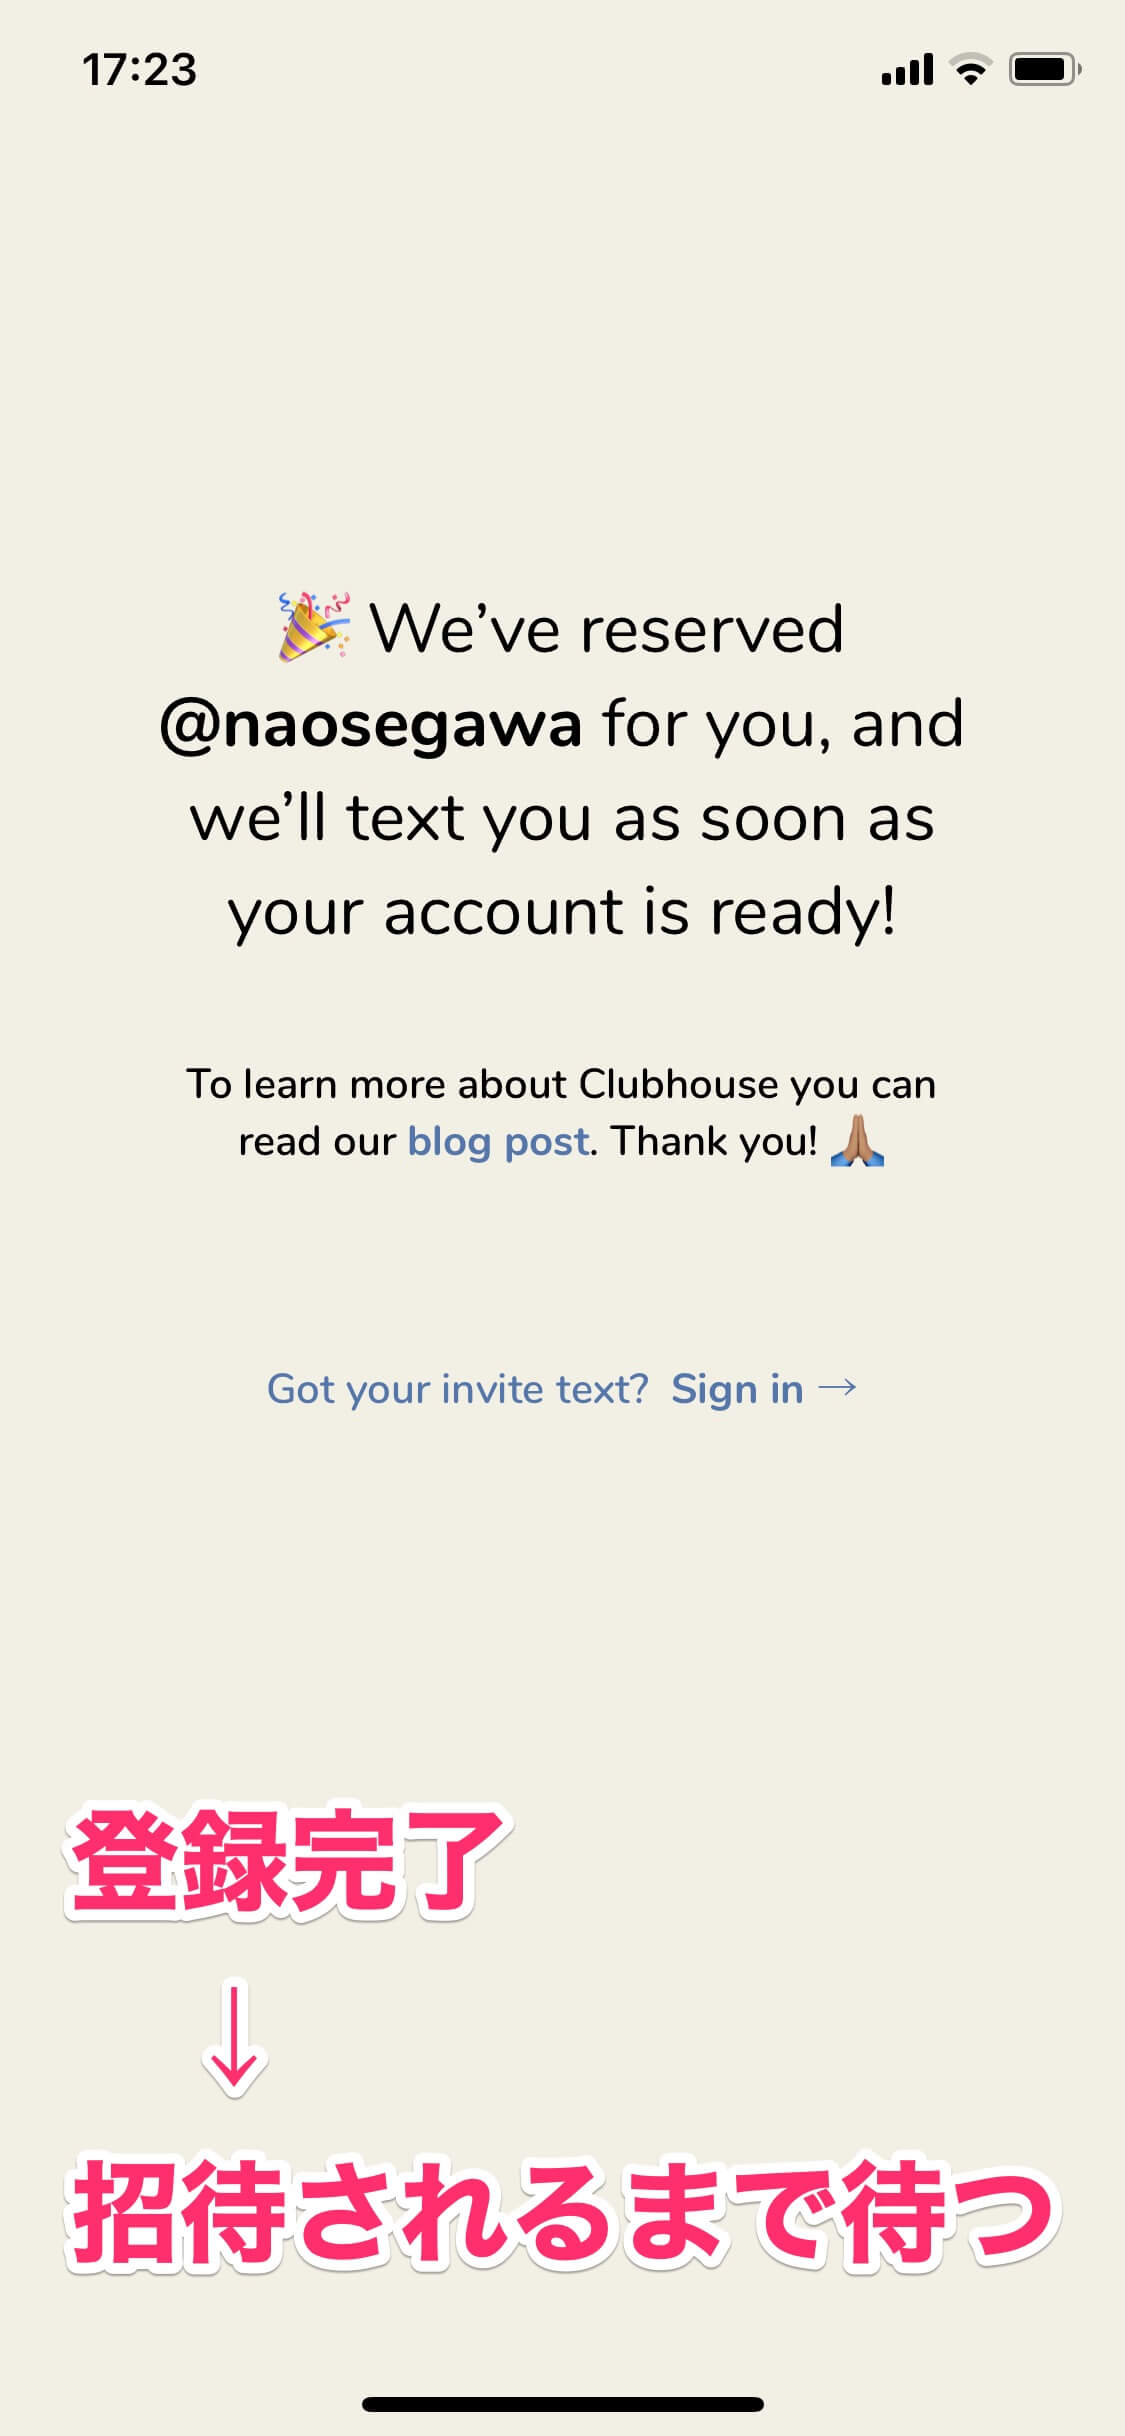 【Clubhouse】まずはここから！ ユーザー登録と招待されたあとの参加方法